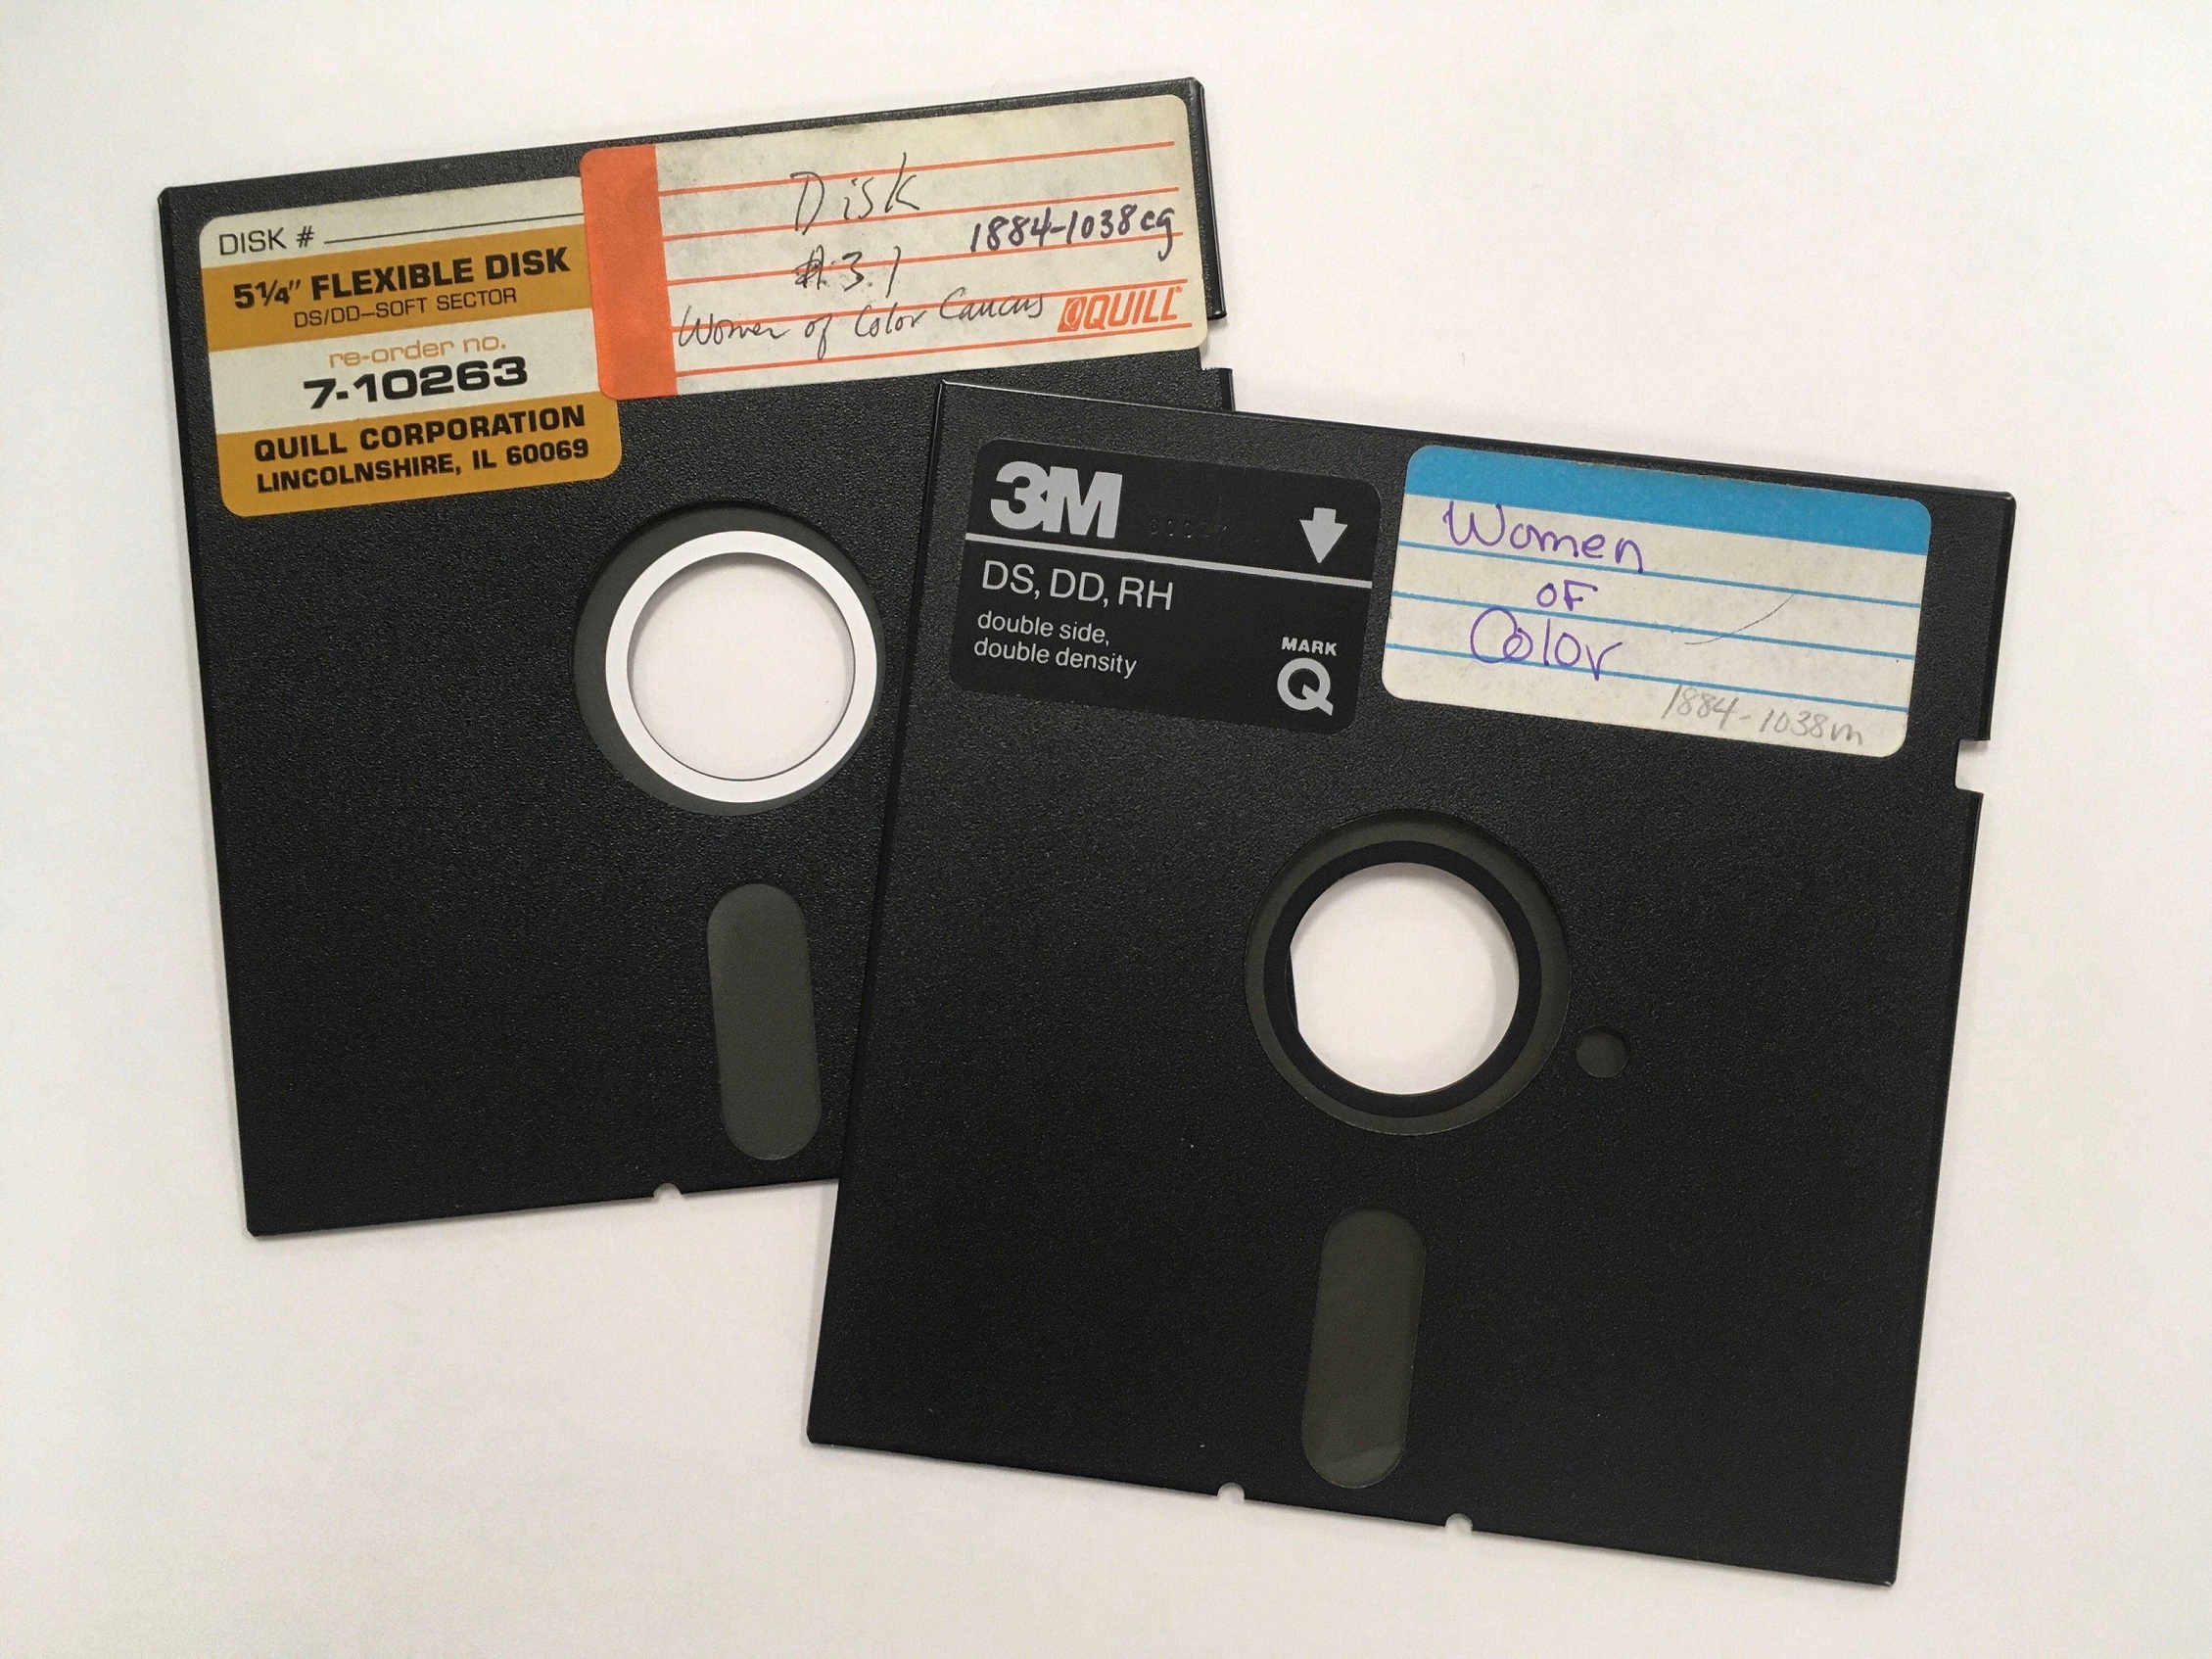 WOAR floppy disks